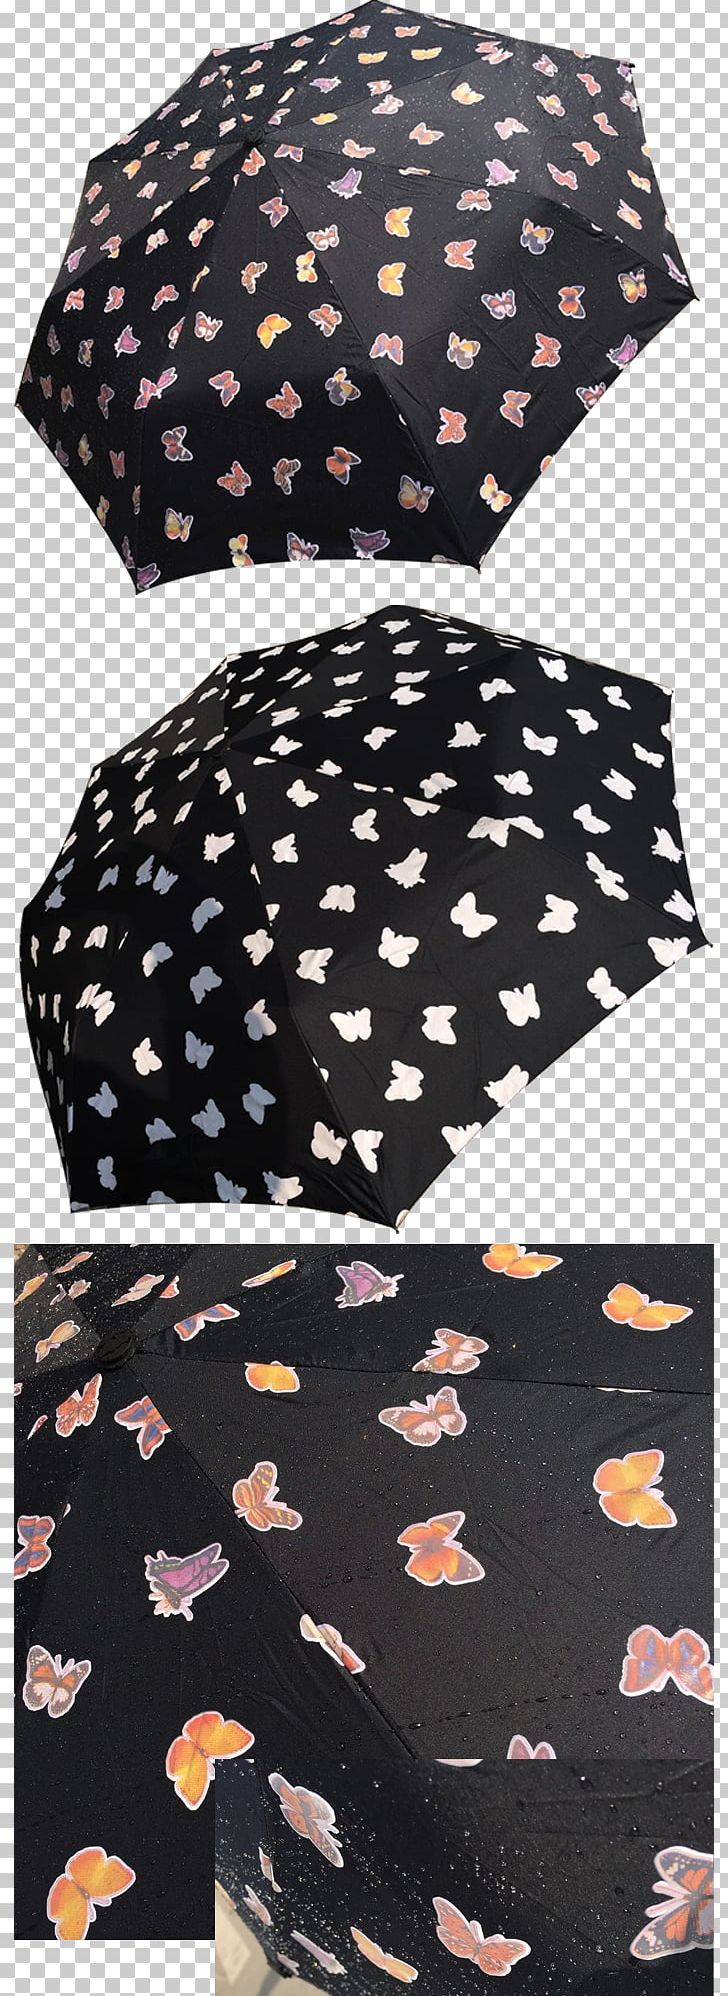 Polka Dot Umbrella Xiamen Brown PNG, Clipart, Brown, Cap, Color, Flower, Lockwood Umbrellas Ltd Free PNG Download